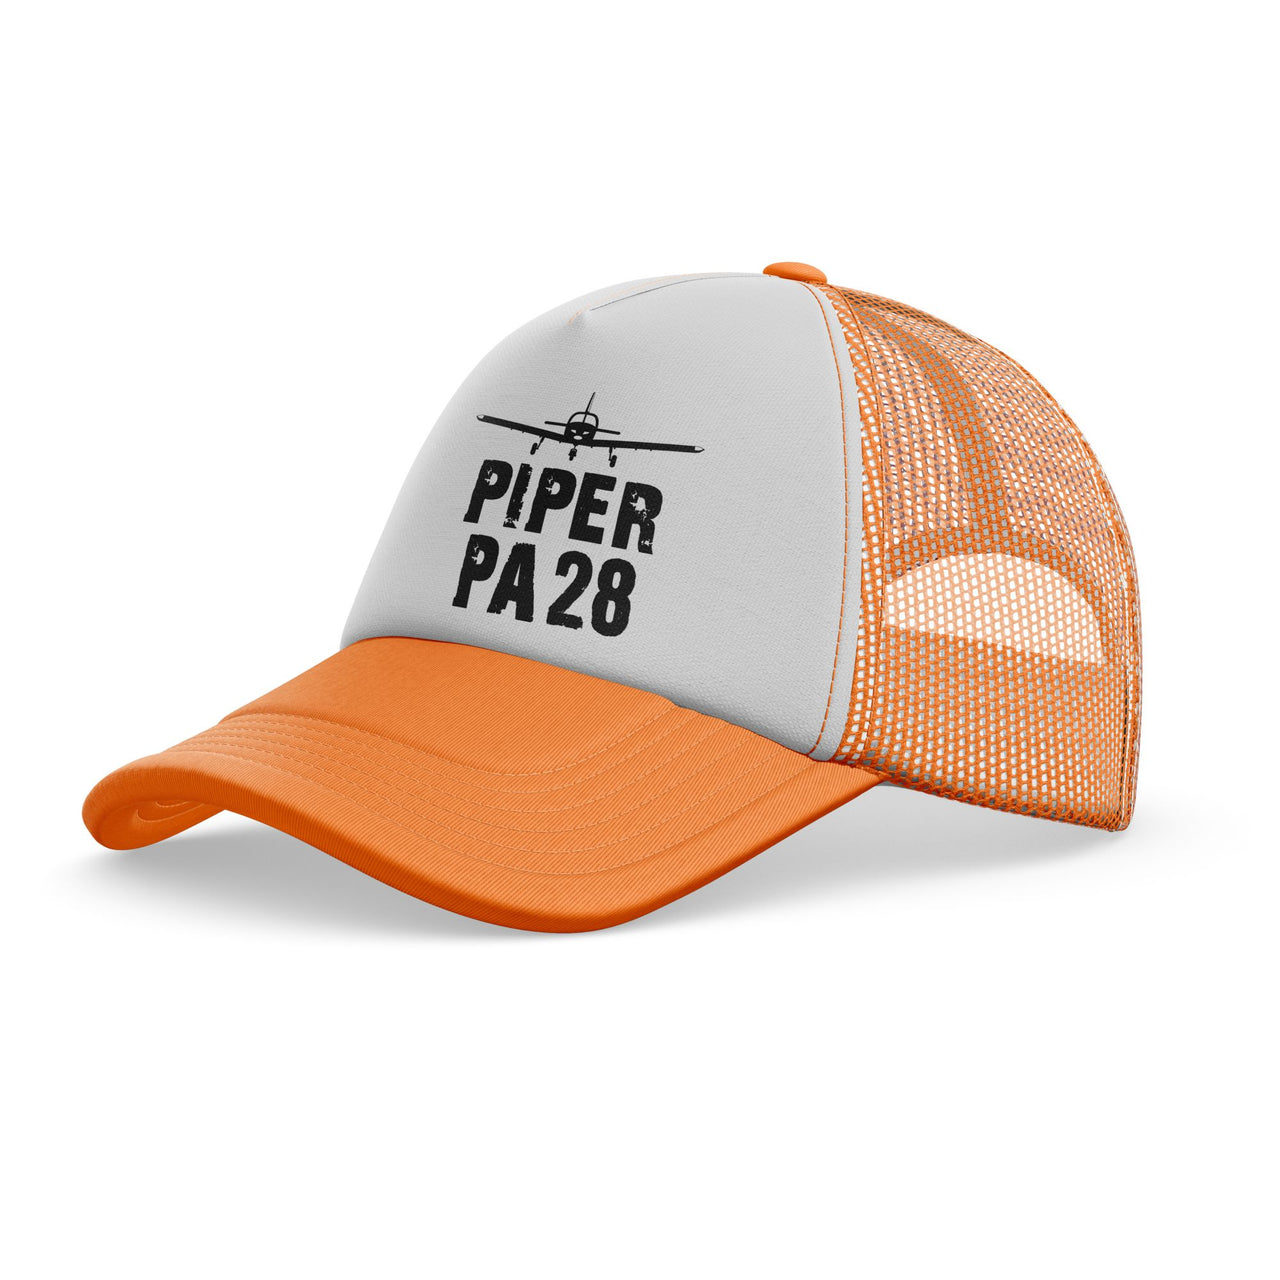 Piper PA28 & Plane Designed Trucker Caps & Hats